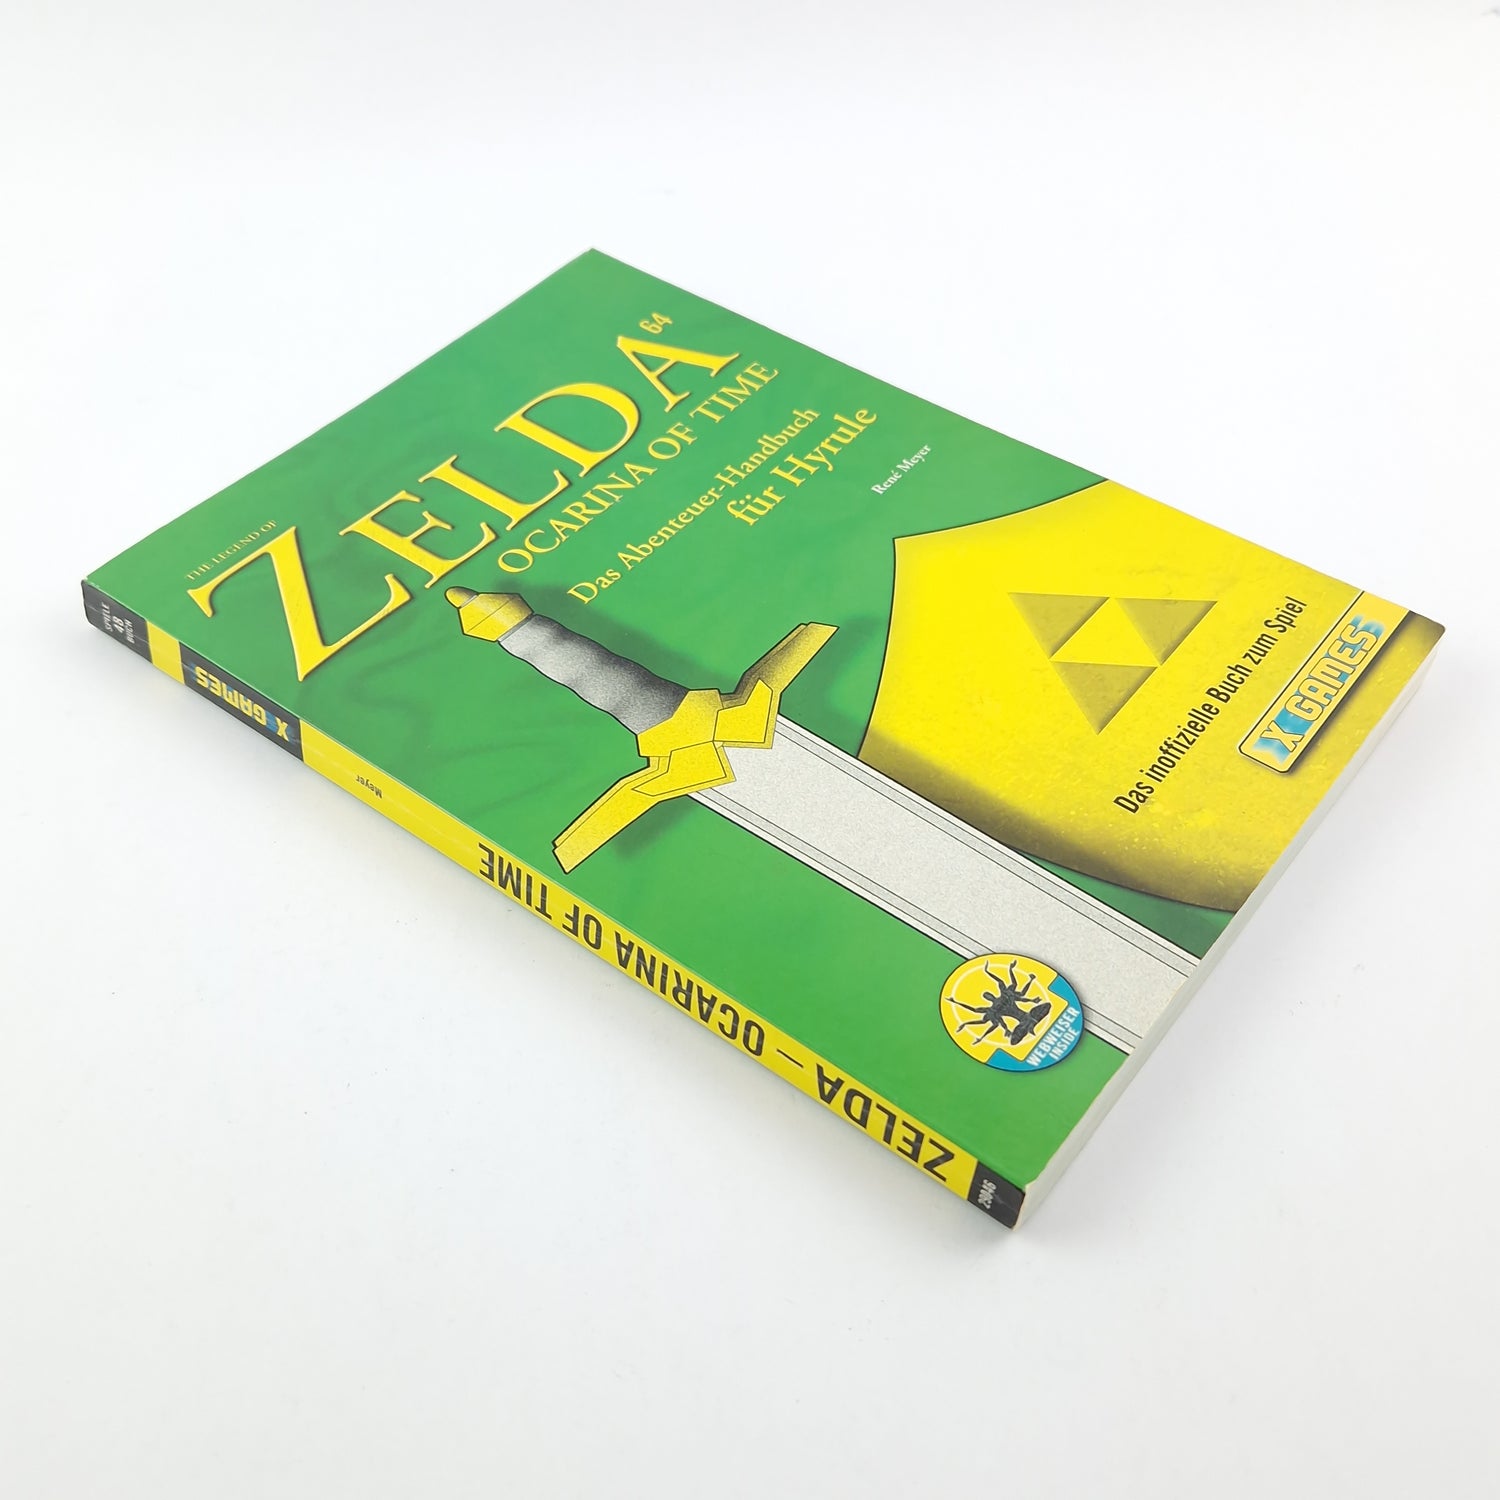 Zelda Ocarina of Time - Das Abenteuer Handbuch für Hyrule X Games  Spieleberater